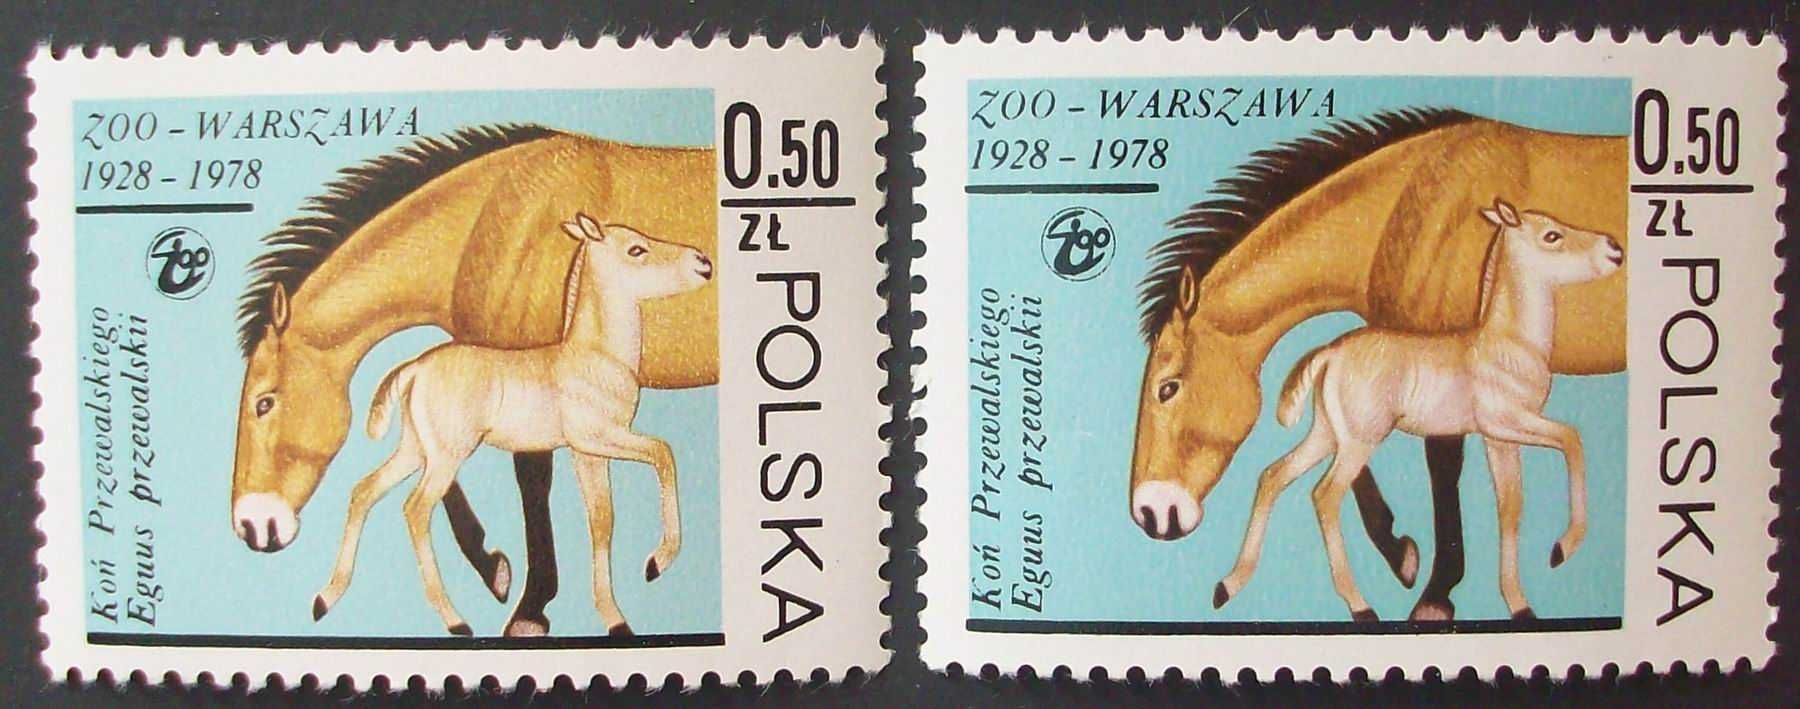 L Znaczki polskie rok 1978 kwartał IV